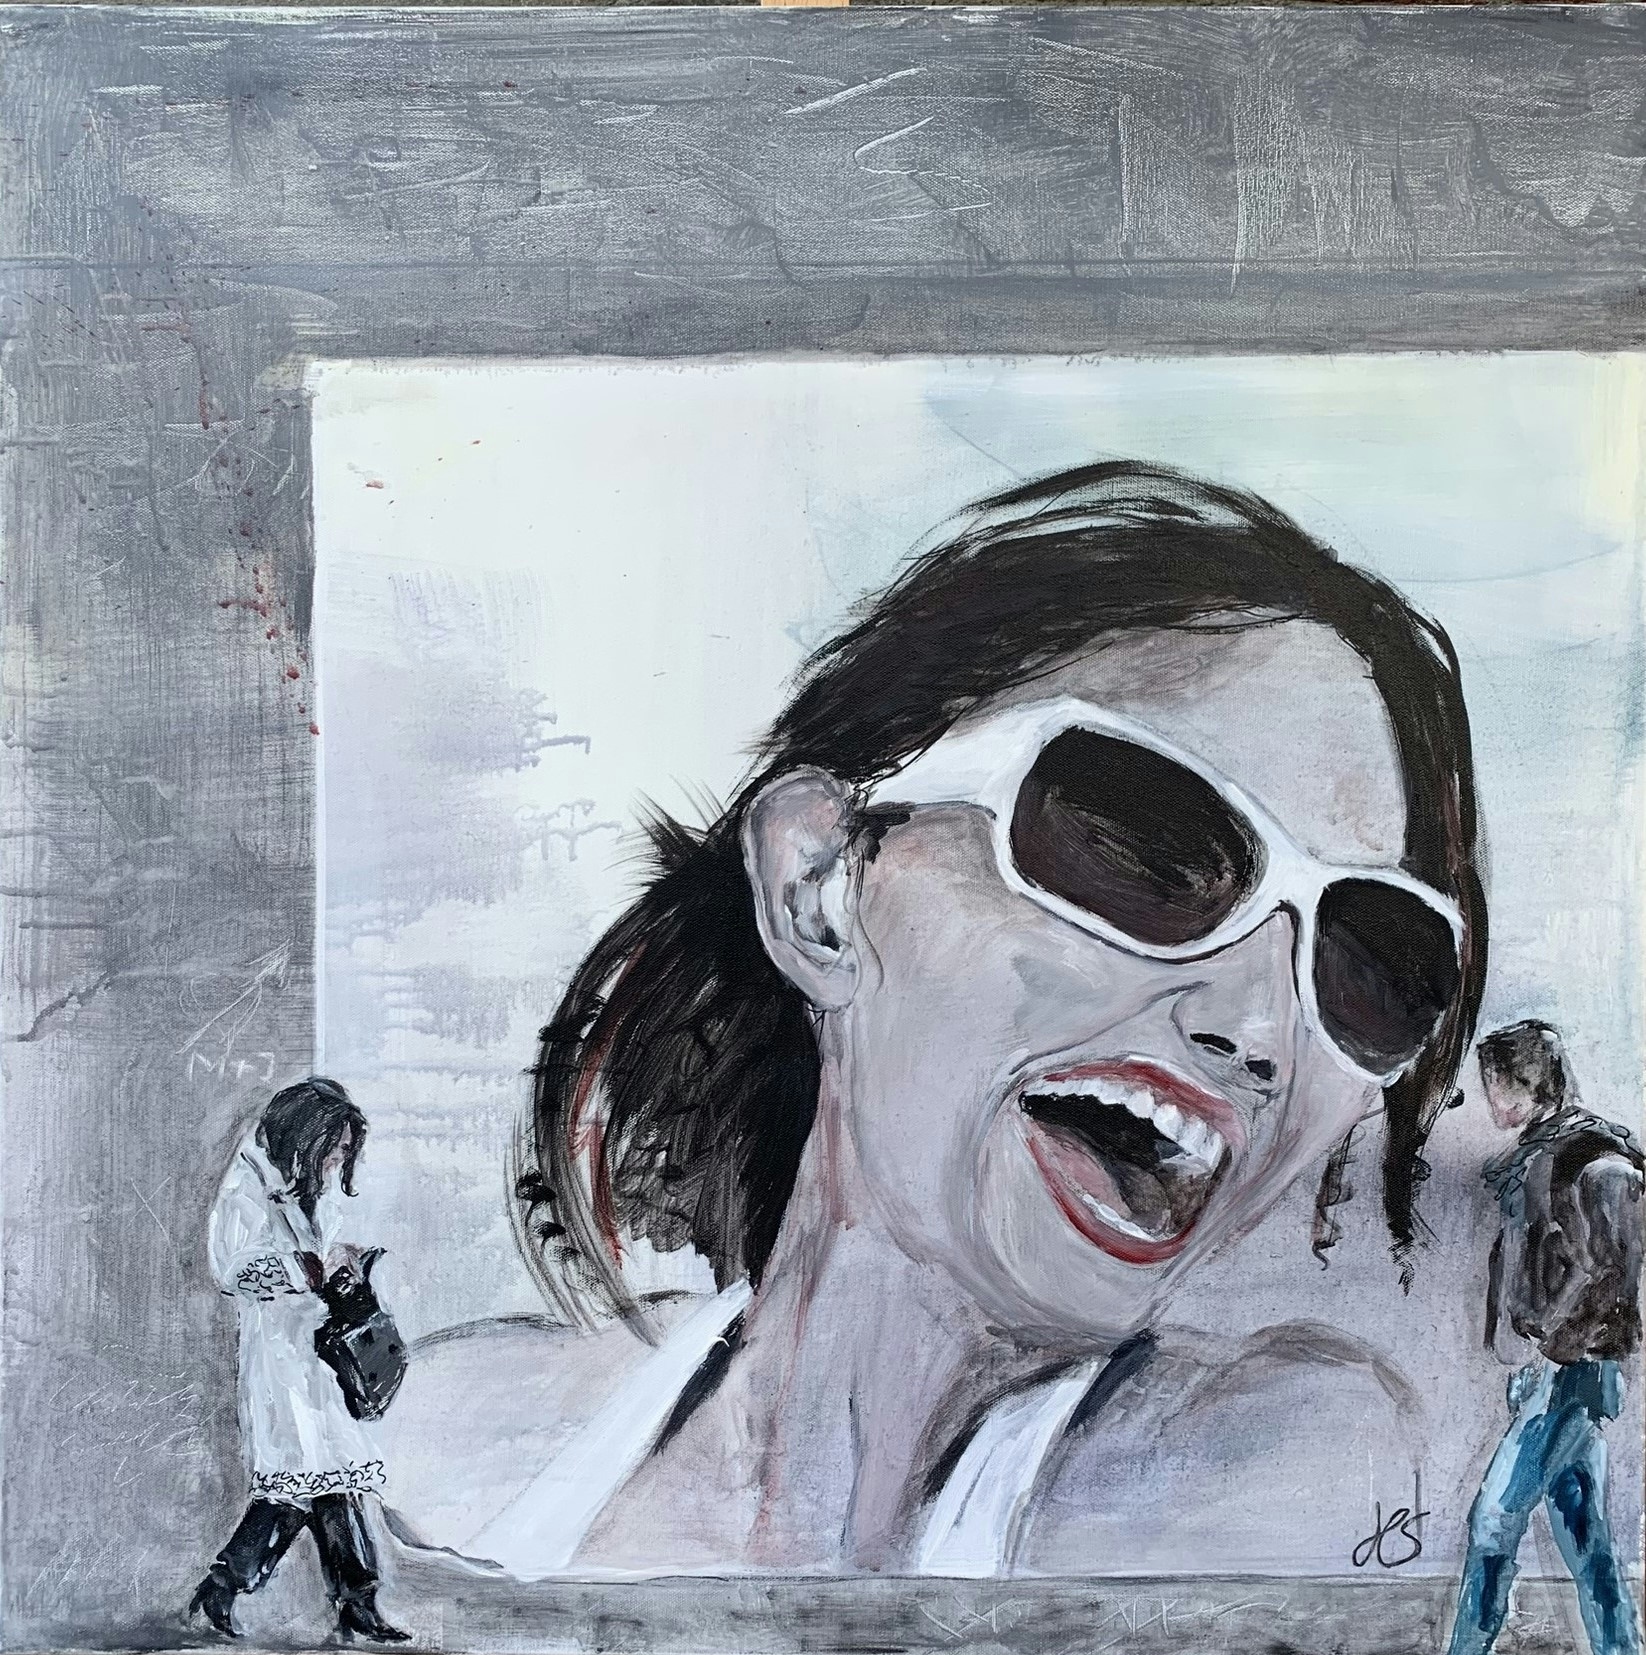 Kunstwerk von Heike Schümann zeigt eine überdimensioniert dargestellte, lachende Frau auf einem Plakat und vorbeigehende Menschen